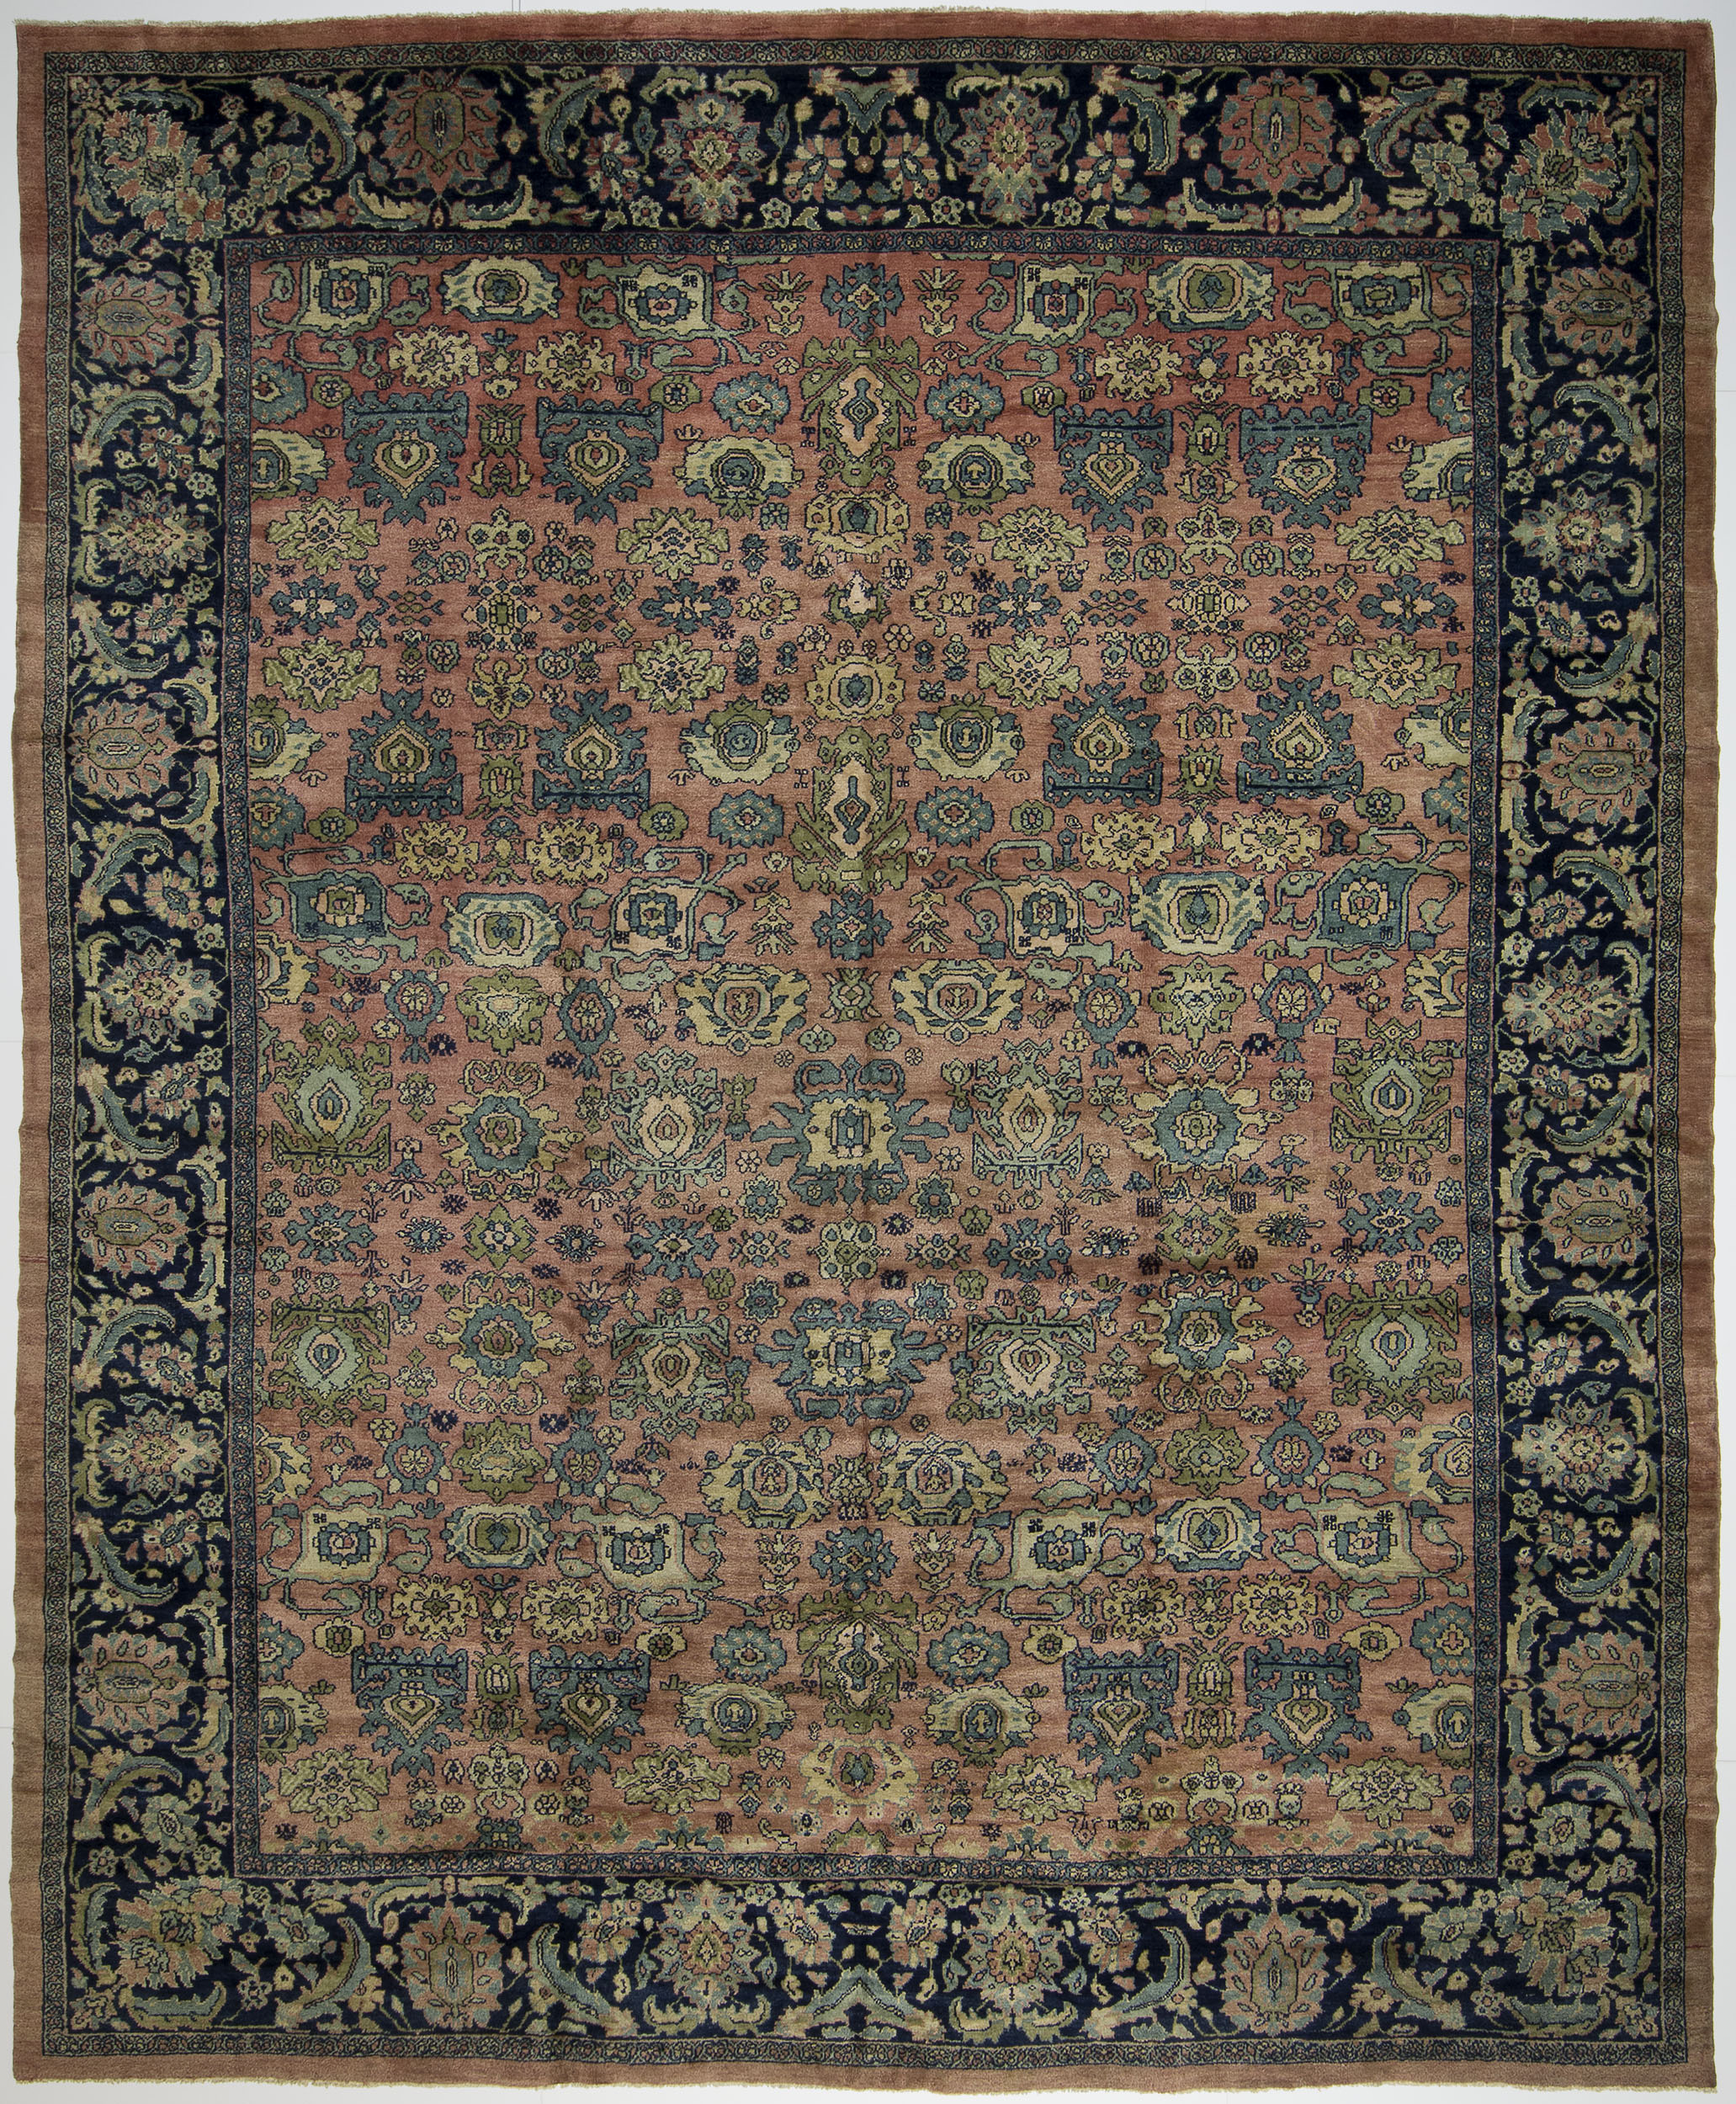 Mahal Carpet 14' 11" x 12' 4" 